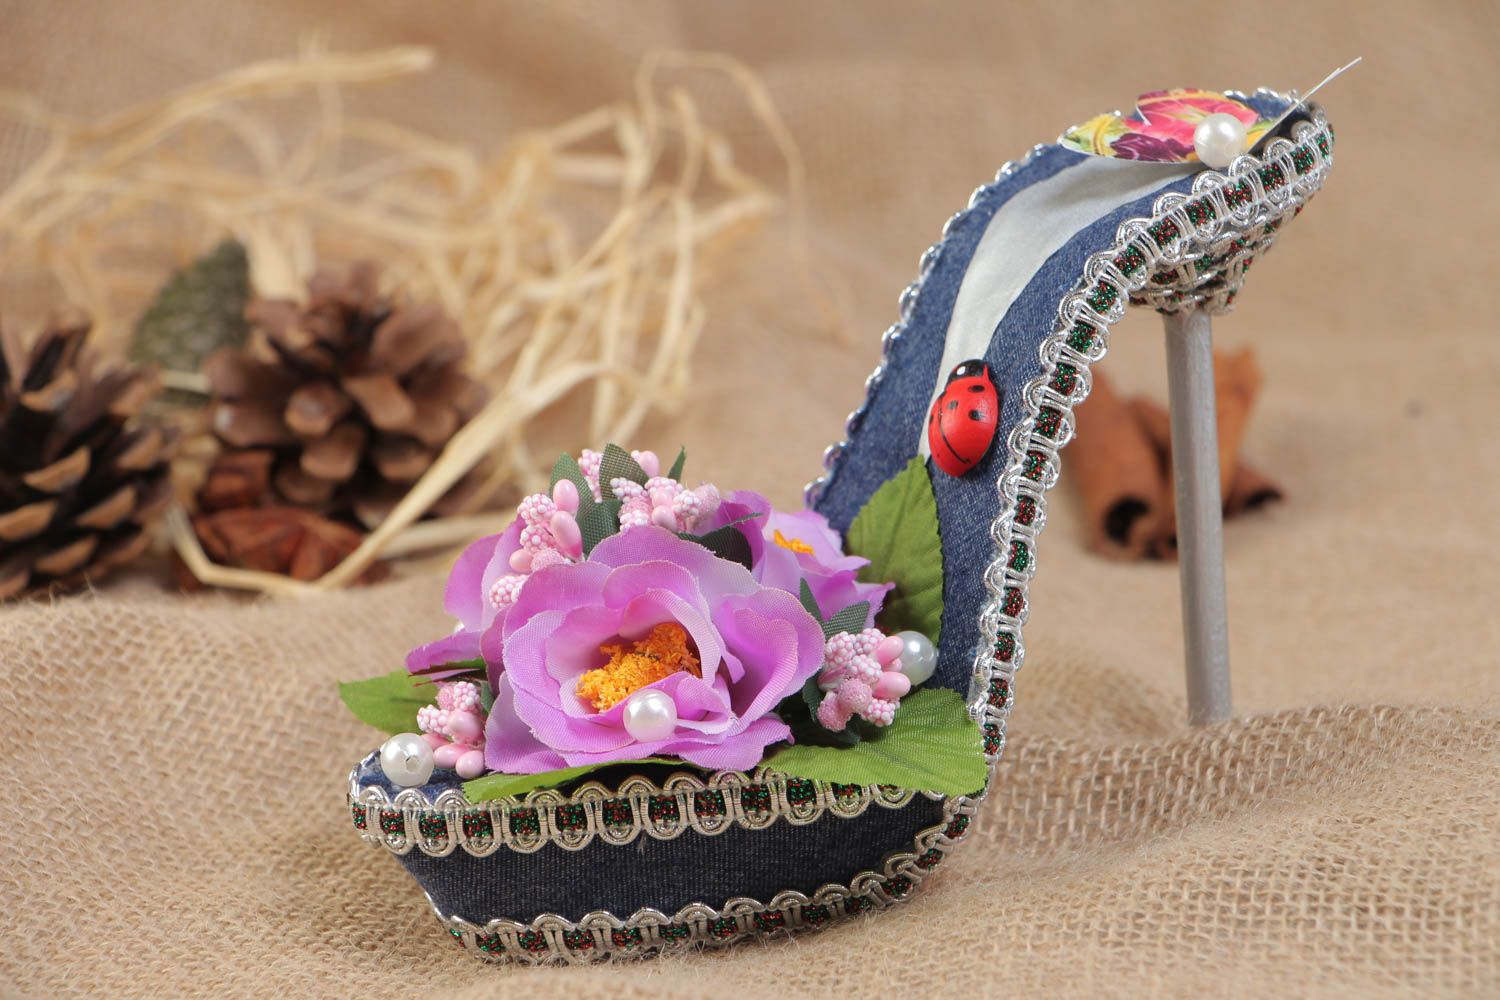 Декоративная туфелька с цветами для украшения дома топиарий цветная хэнд мейд фото 1